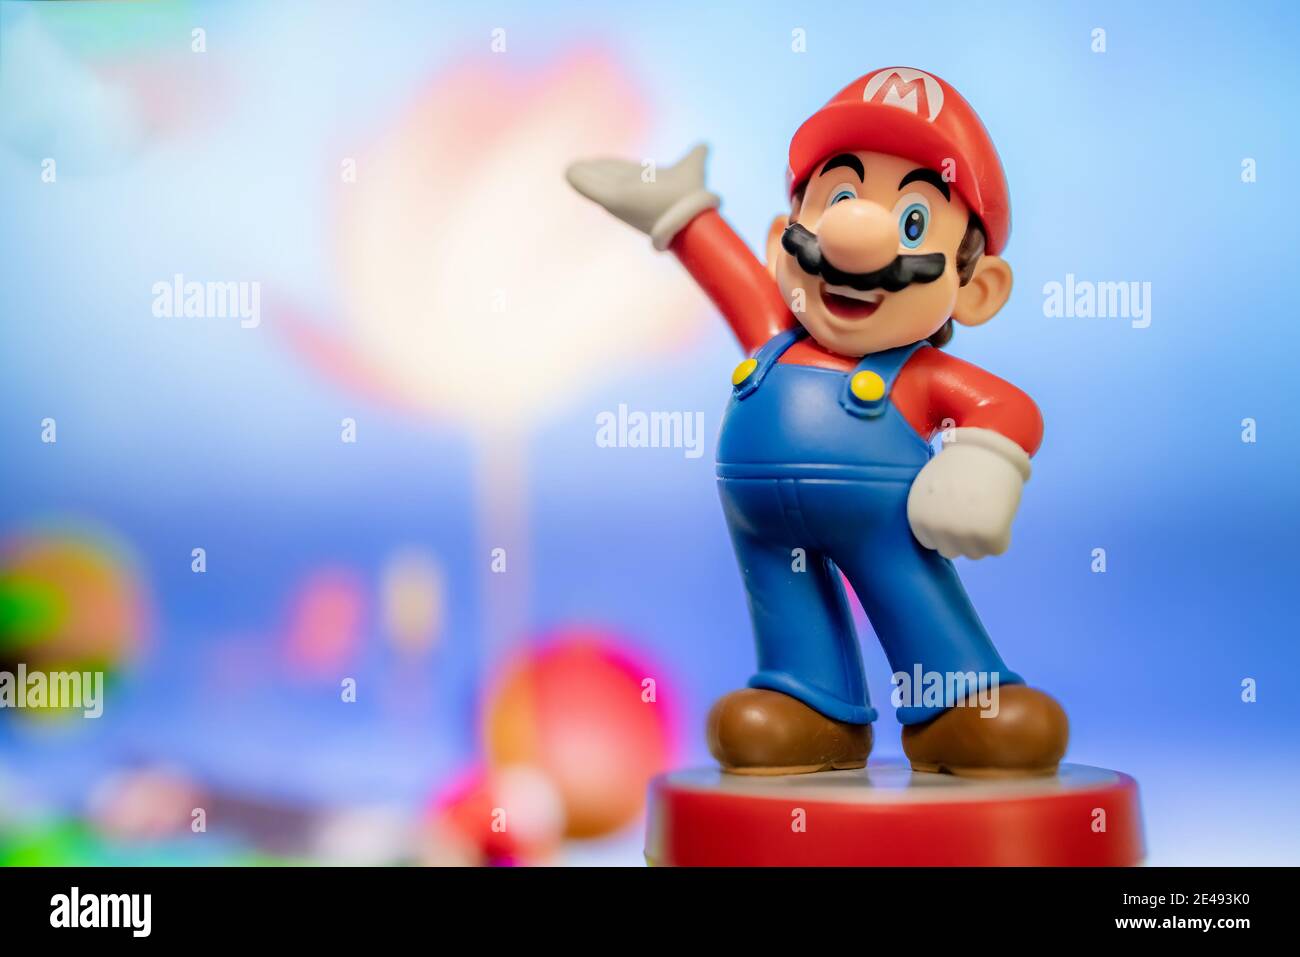 MOSCÚ, RUSIA - 22 de agosto de 2020: Super Mario Bros figura  character.Super Mario es una plataforma japonesa de videojuegos serie y  medios de comunicación franquicia creado b Fotografía de stock - Alamy